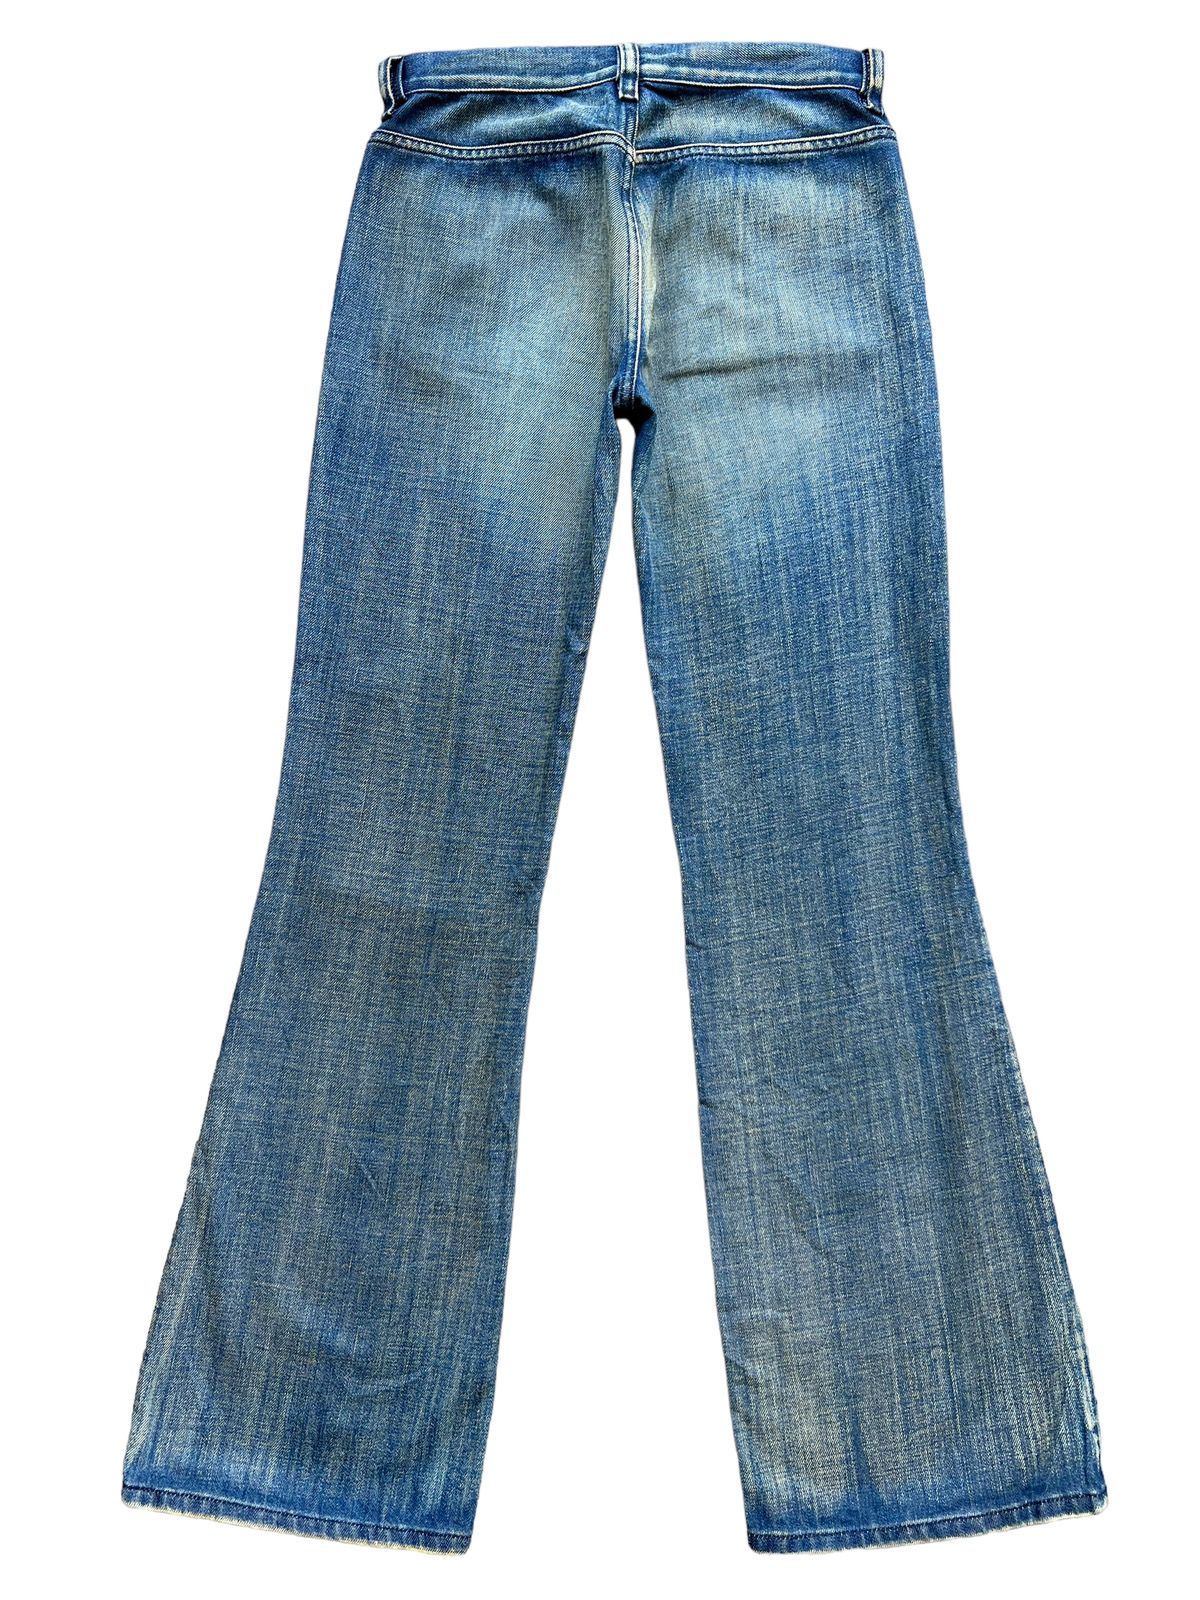 💥💥🔥 Vintage Diesel Rusty Wideleg Flare Denim Jeans 28x32 - 3